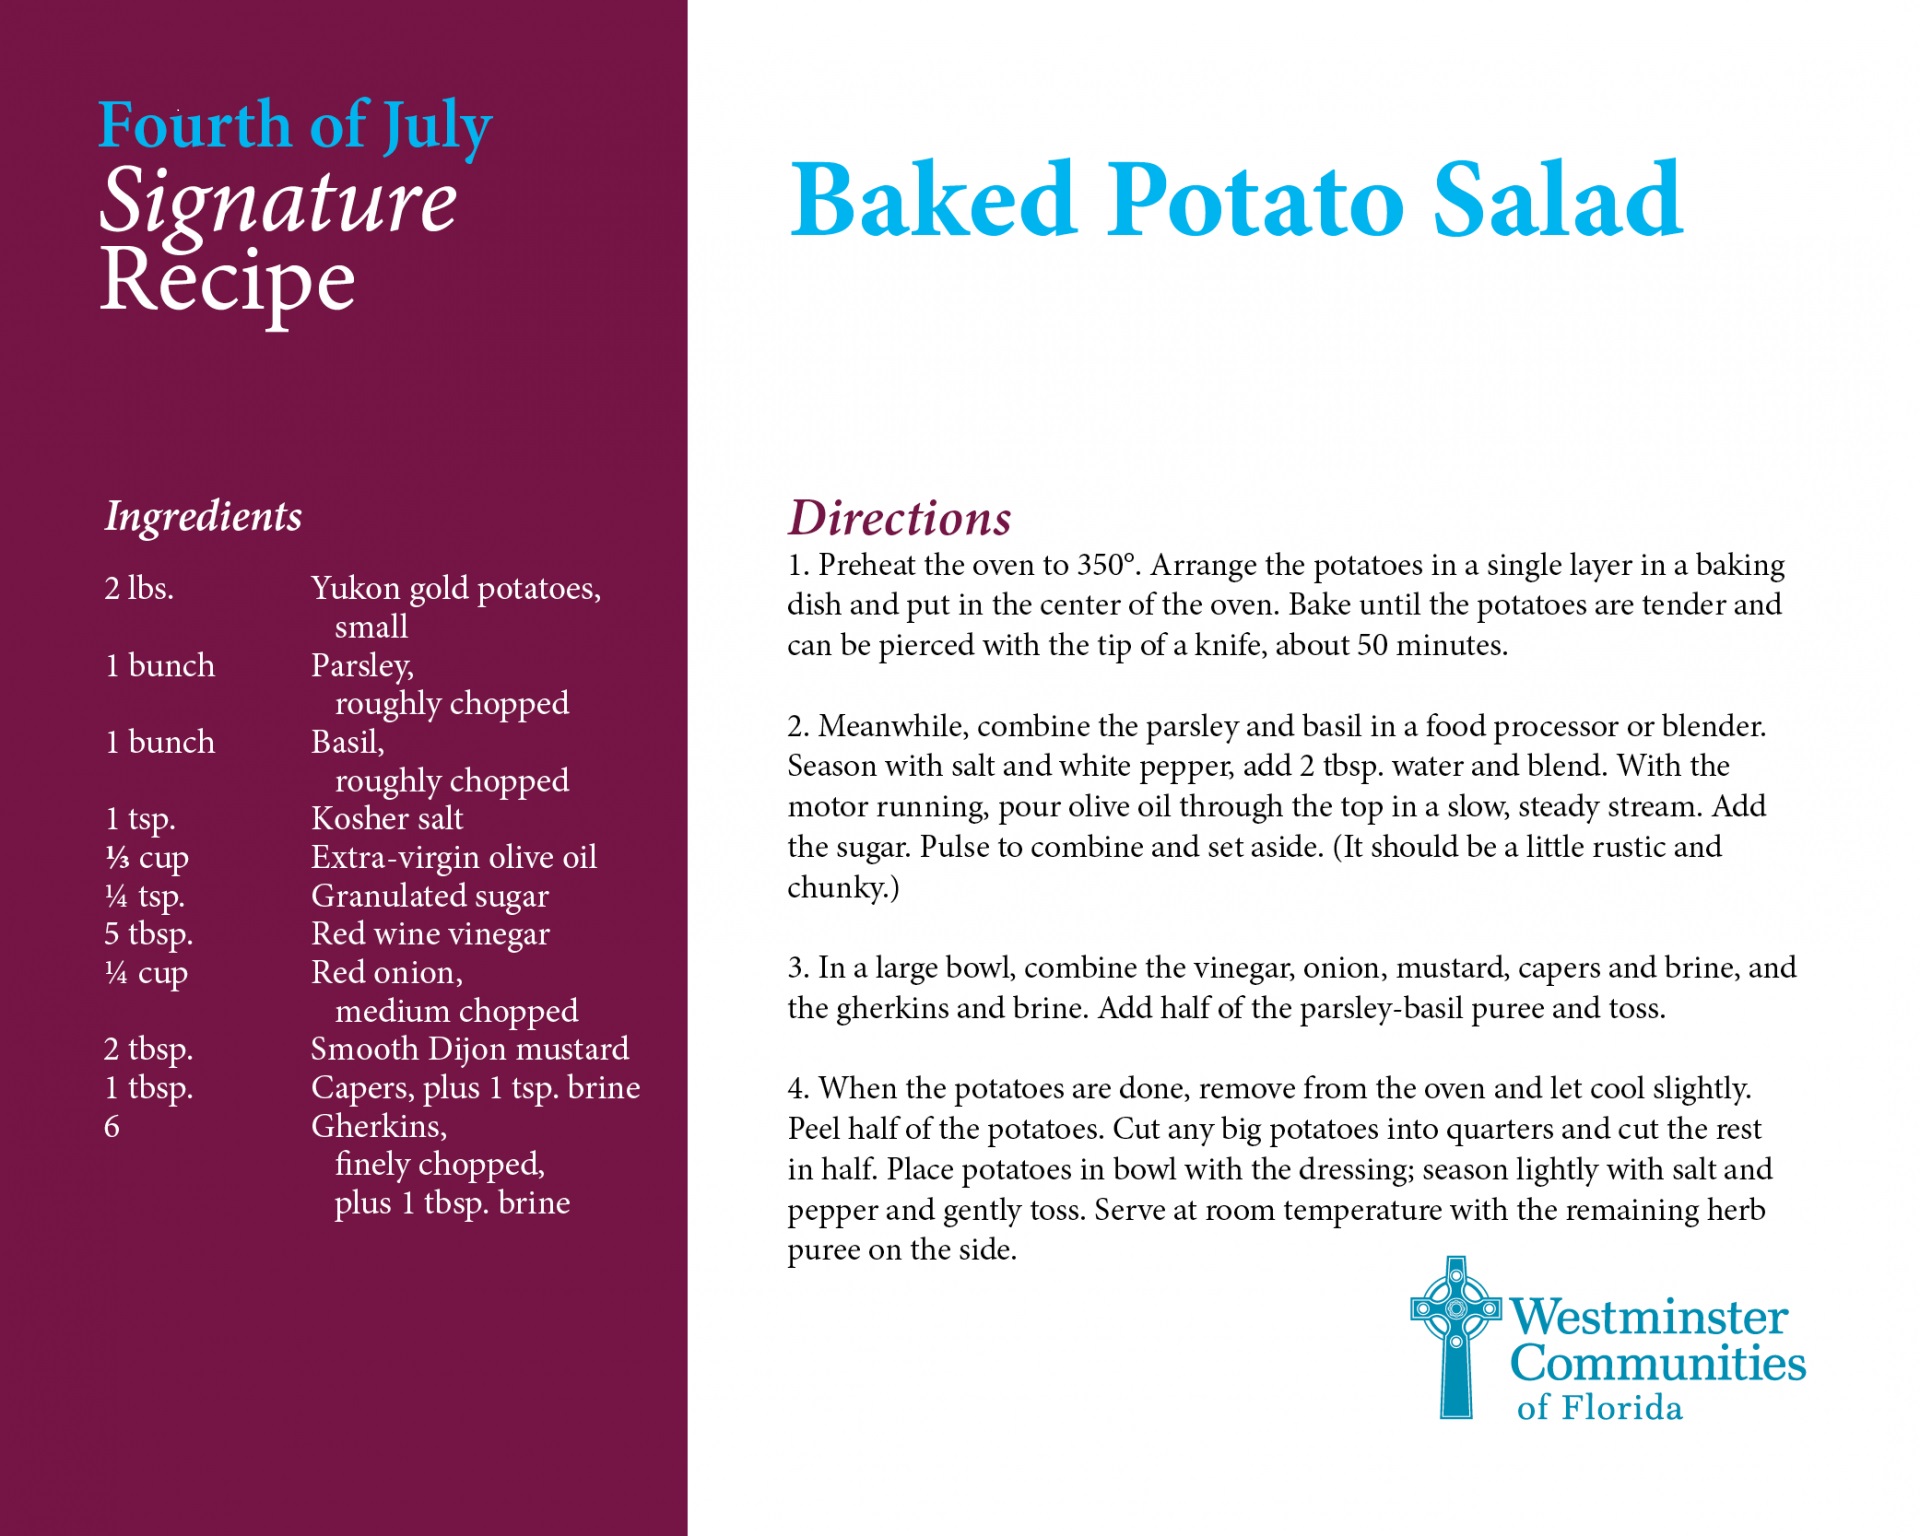 Fourth of July Recipes5 - BAkes Potato Salad